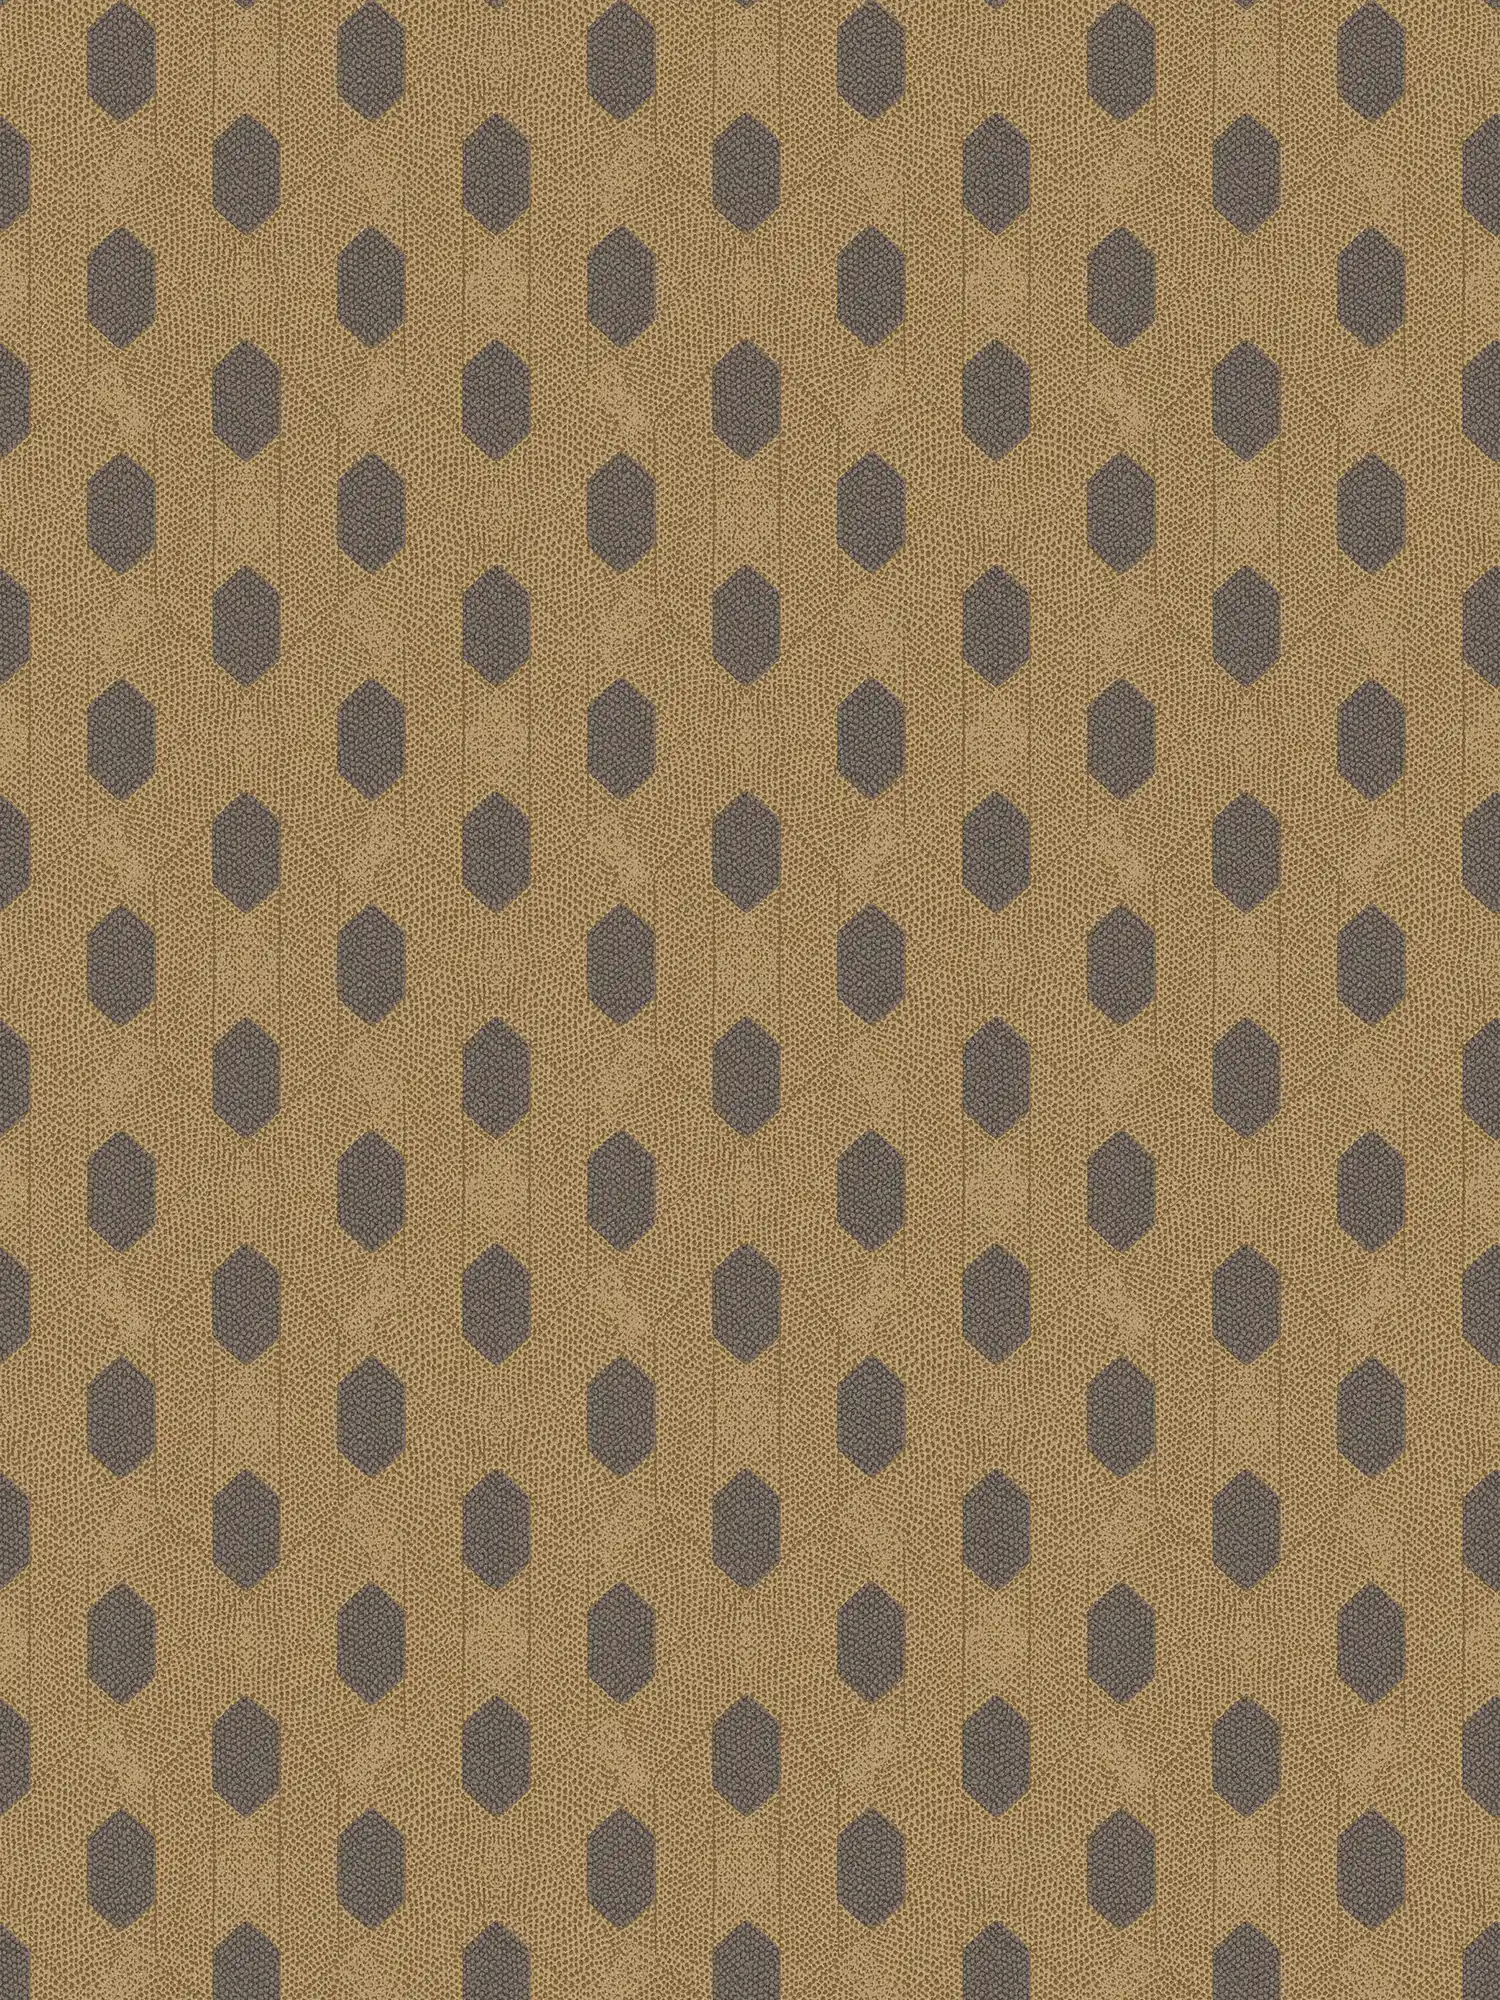 Carta da parati in tessuto non tessuto oro con motivo geometrico - marrone, oro, nero
